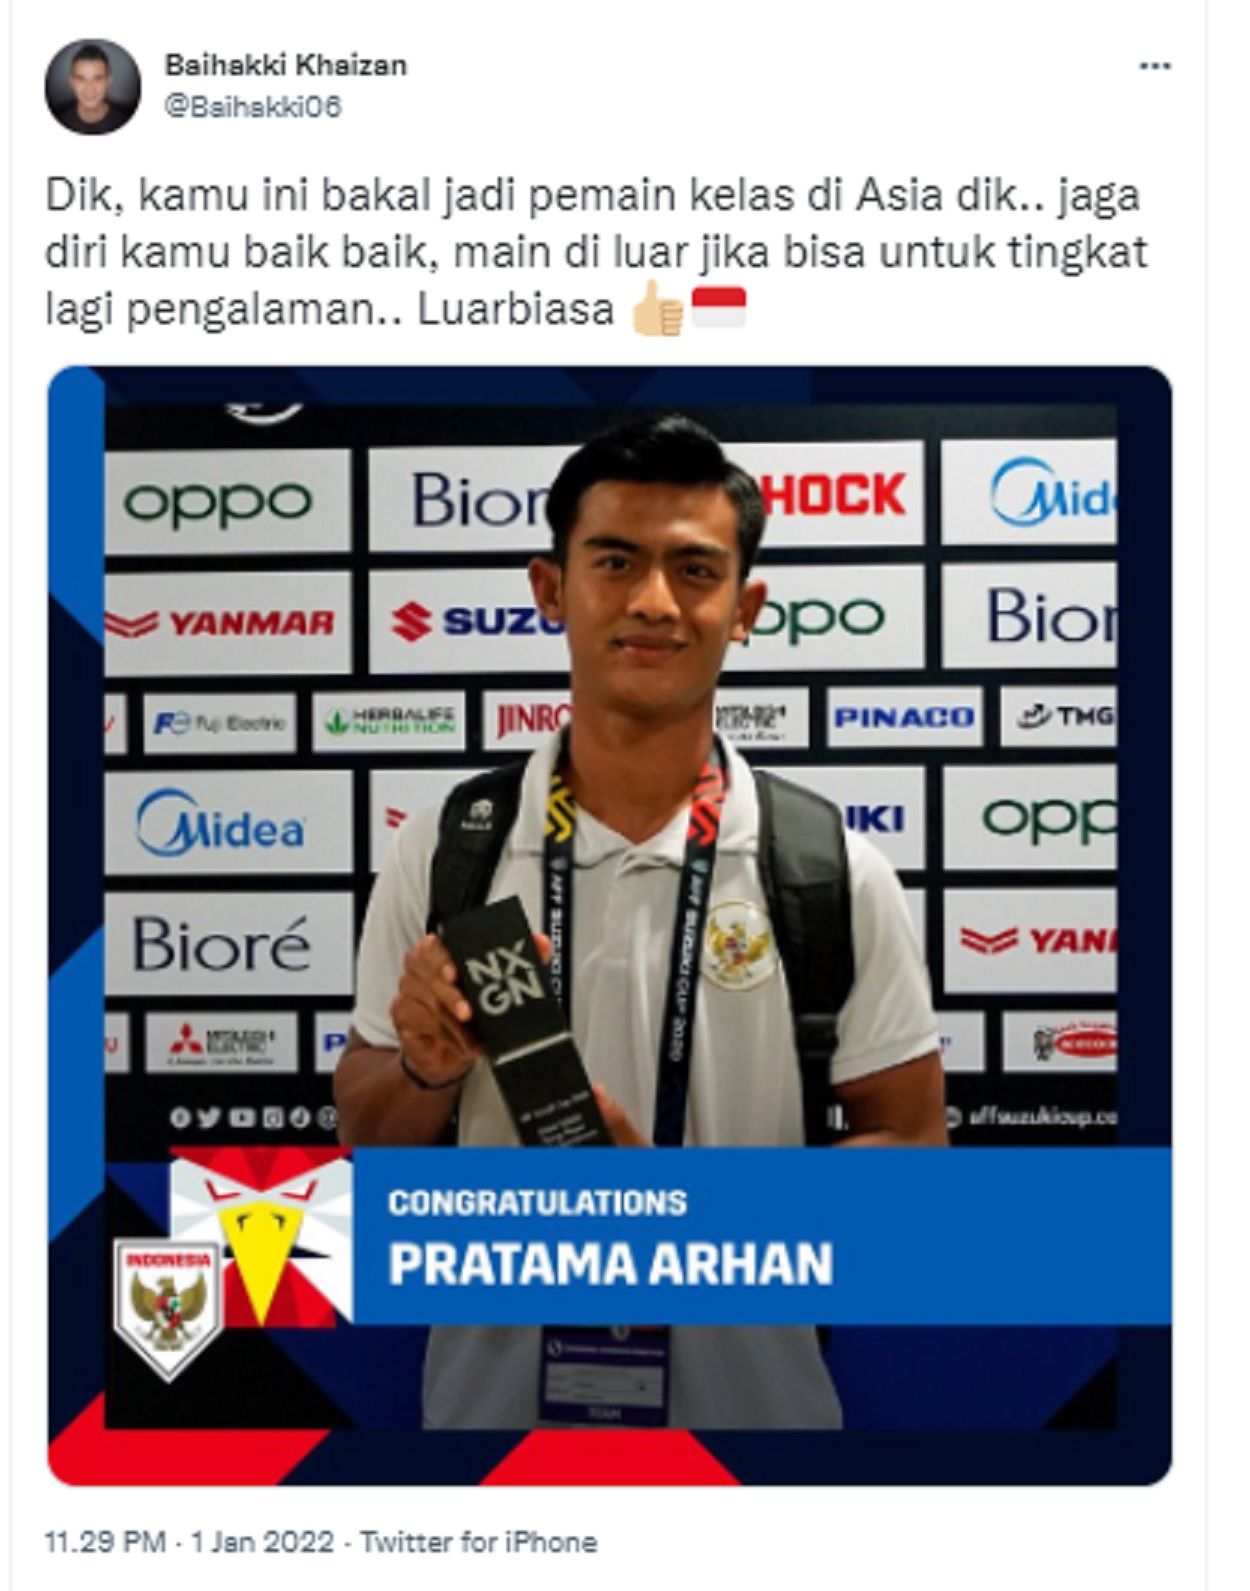 Penampilan bek yang memperkuat PSIS Semarang ini mendapat pujian dari berbagai pihak, salah satunya adalah dari Eks pemain Persija Jakarta dan Persib Bandung yang juga legenda sepakbola Singapura, Baihakki Khaizan.